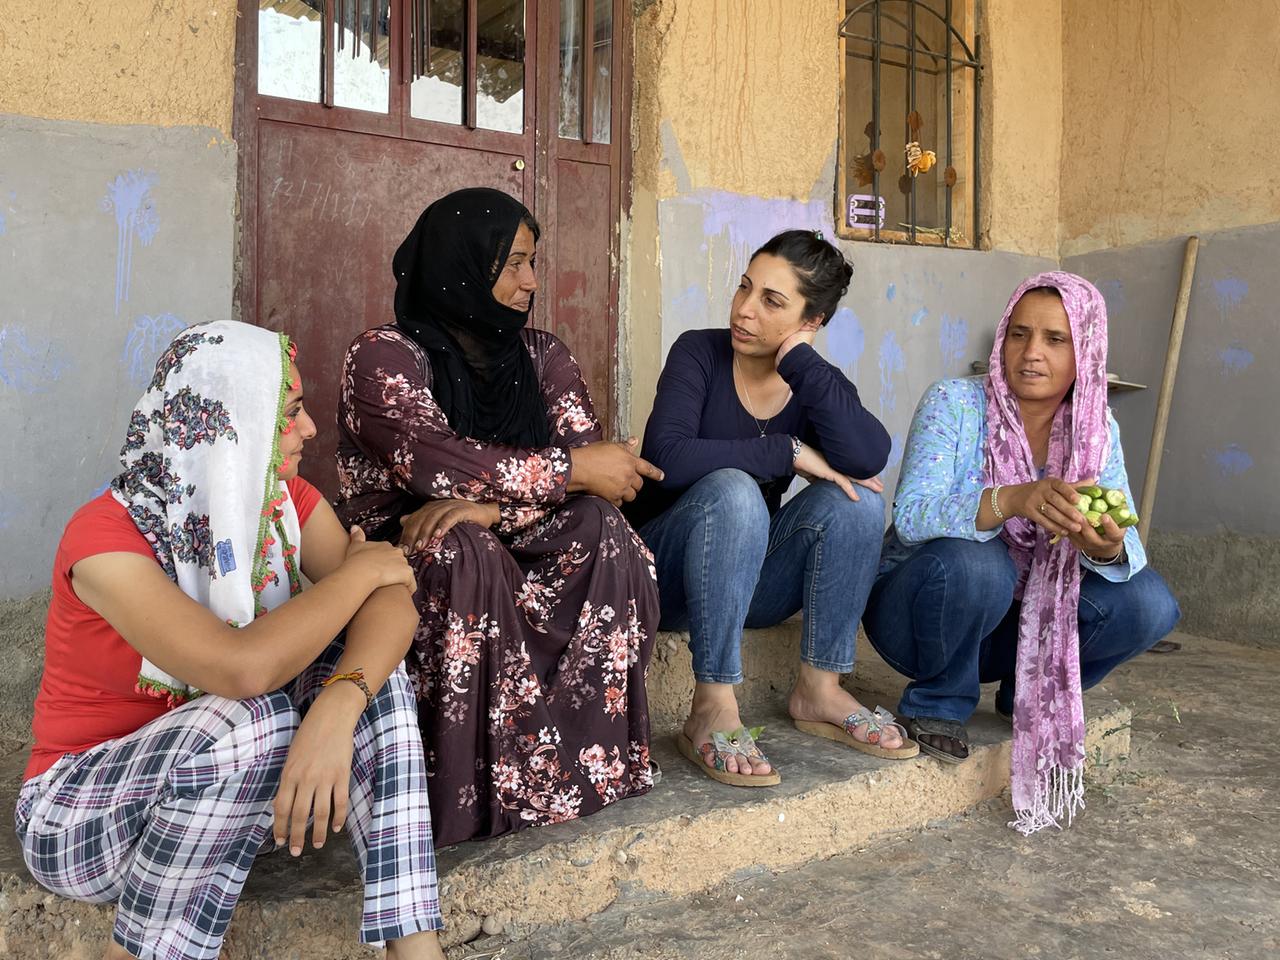 Auf der Treppe eines Hauses sitzen vier Frauen und unterhalten sich im Frauendorf Jinwar. Ganz rechts sitzt Zeyneb - bekleidet mit einer dunklen Jeans, einer hellblauen Bluse und einem rosa Kopftuch.